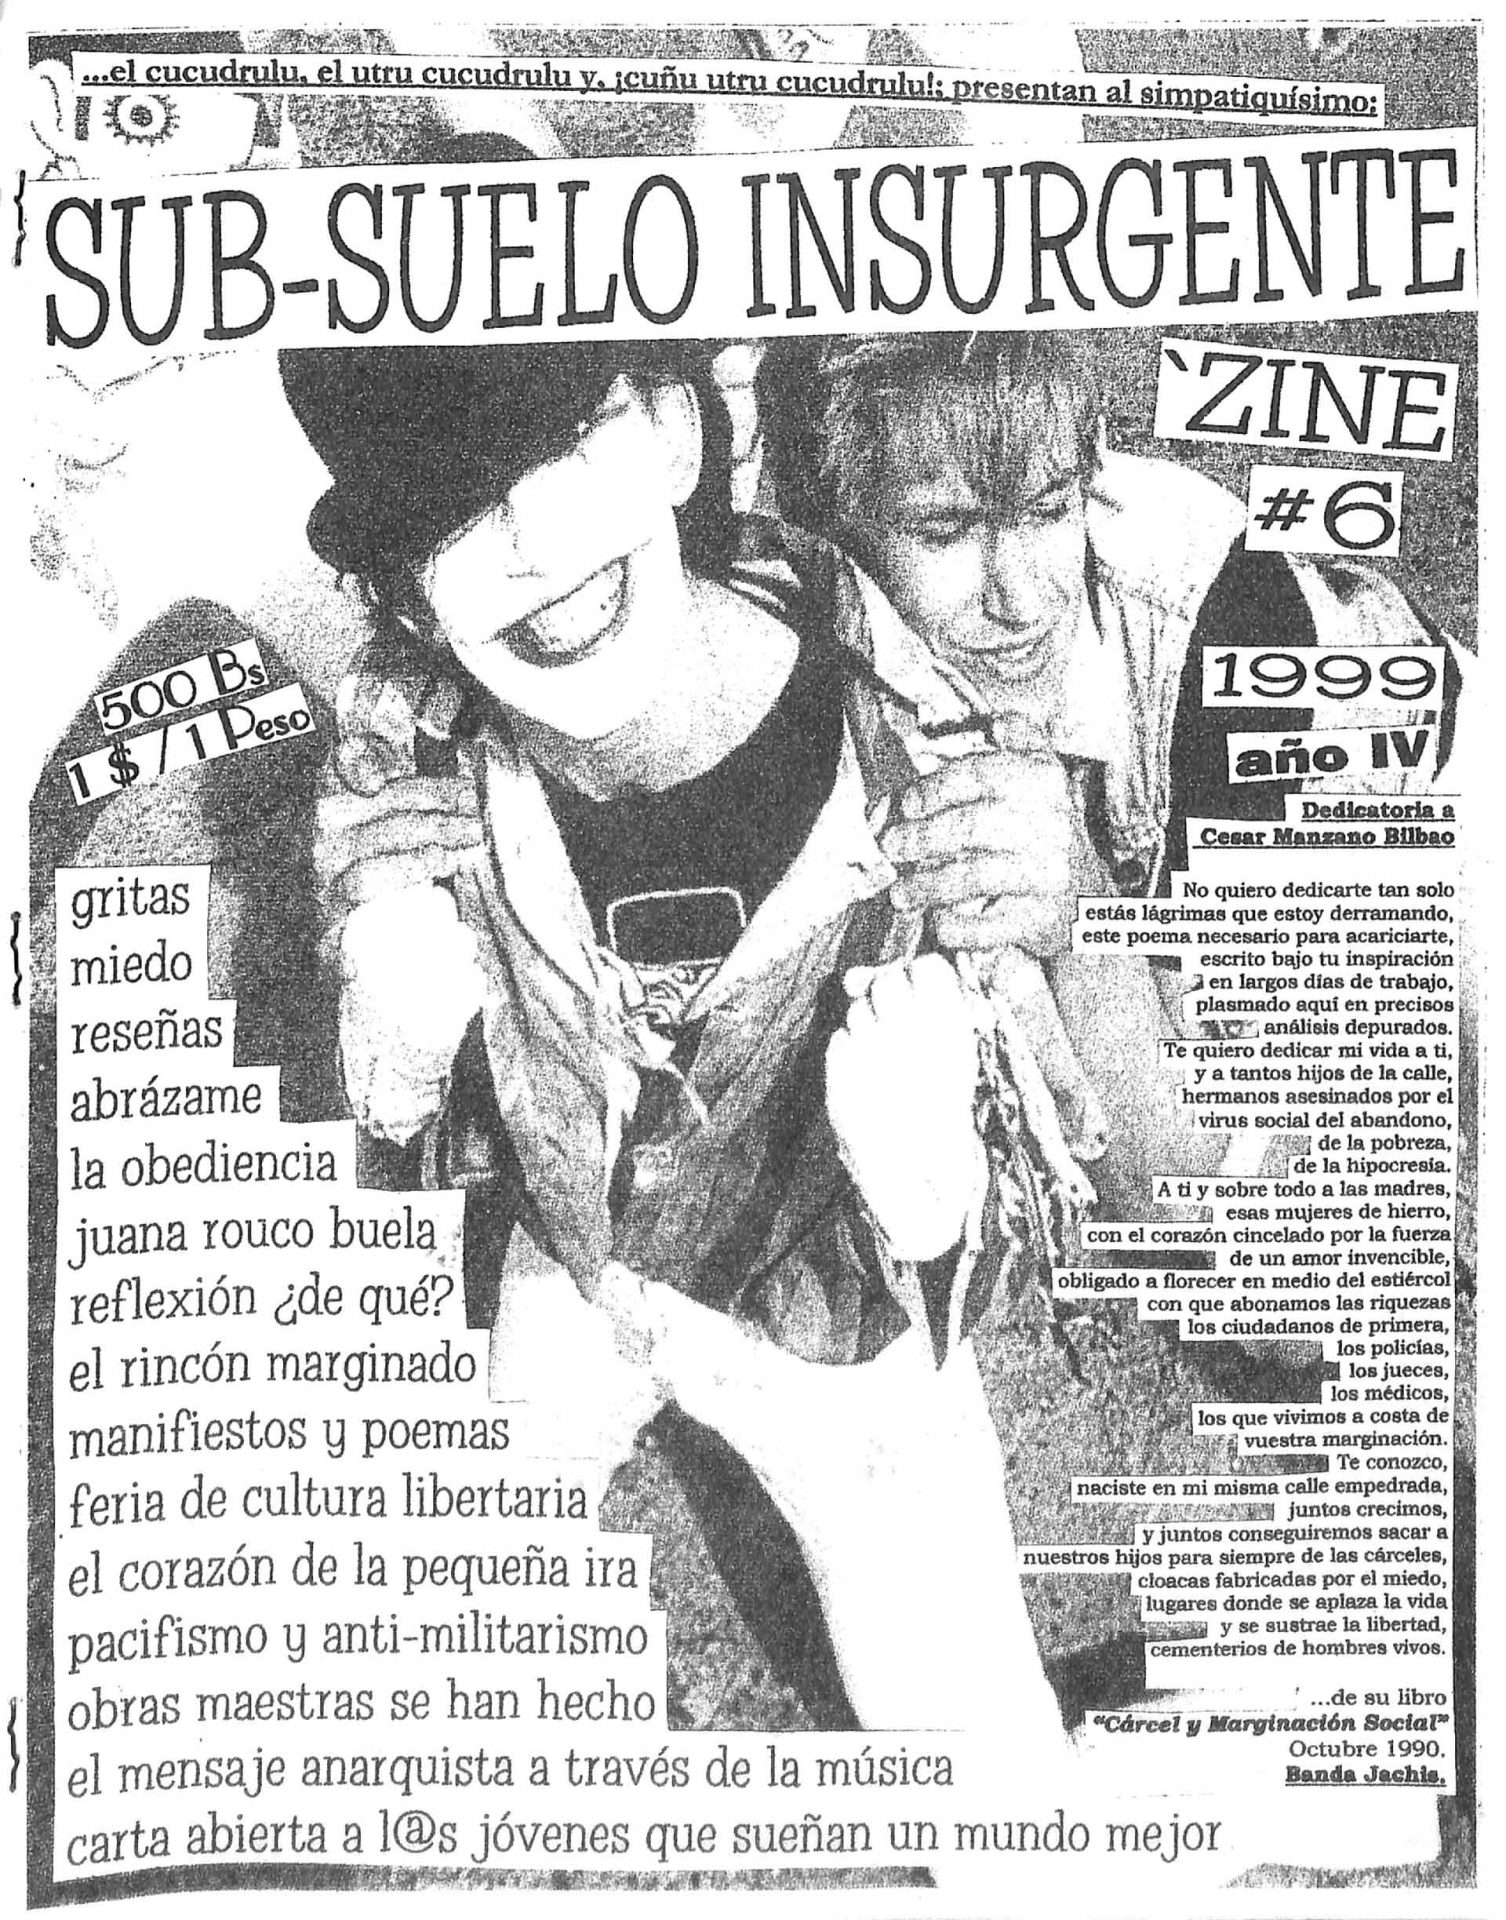 Sub-suelo Insurgente Zine No. 6, 1999